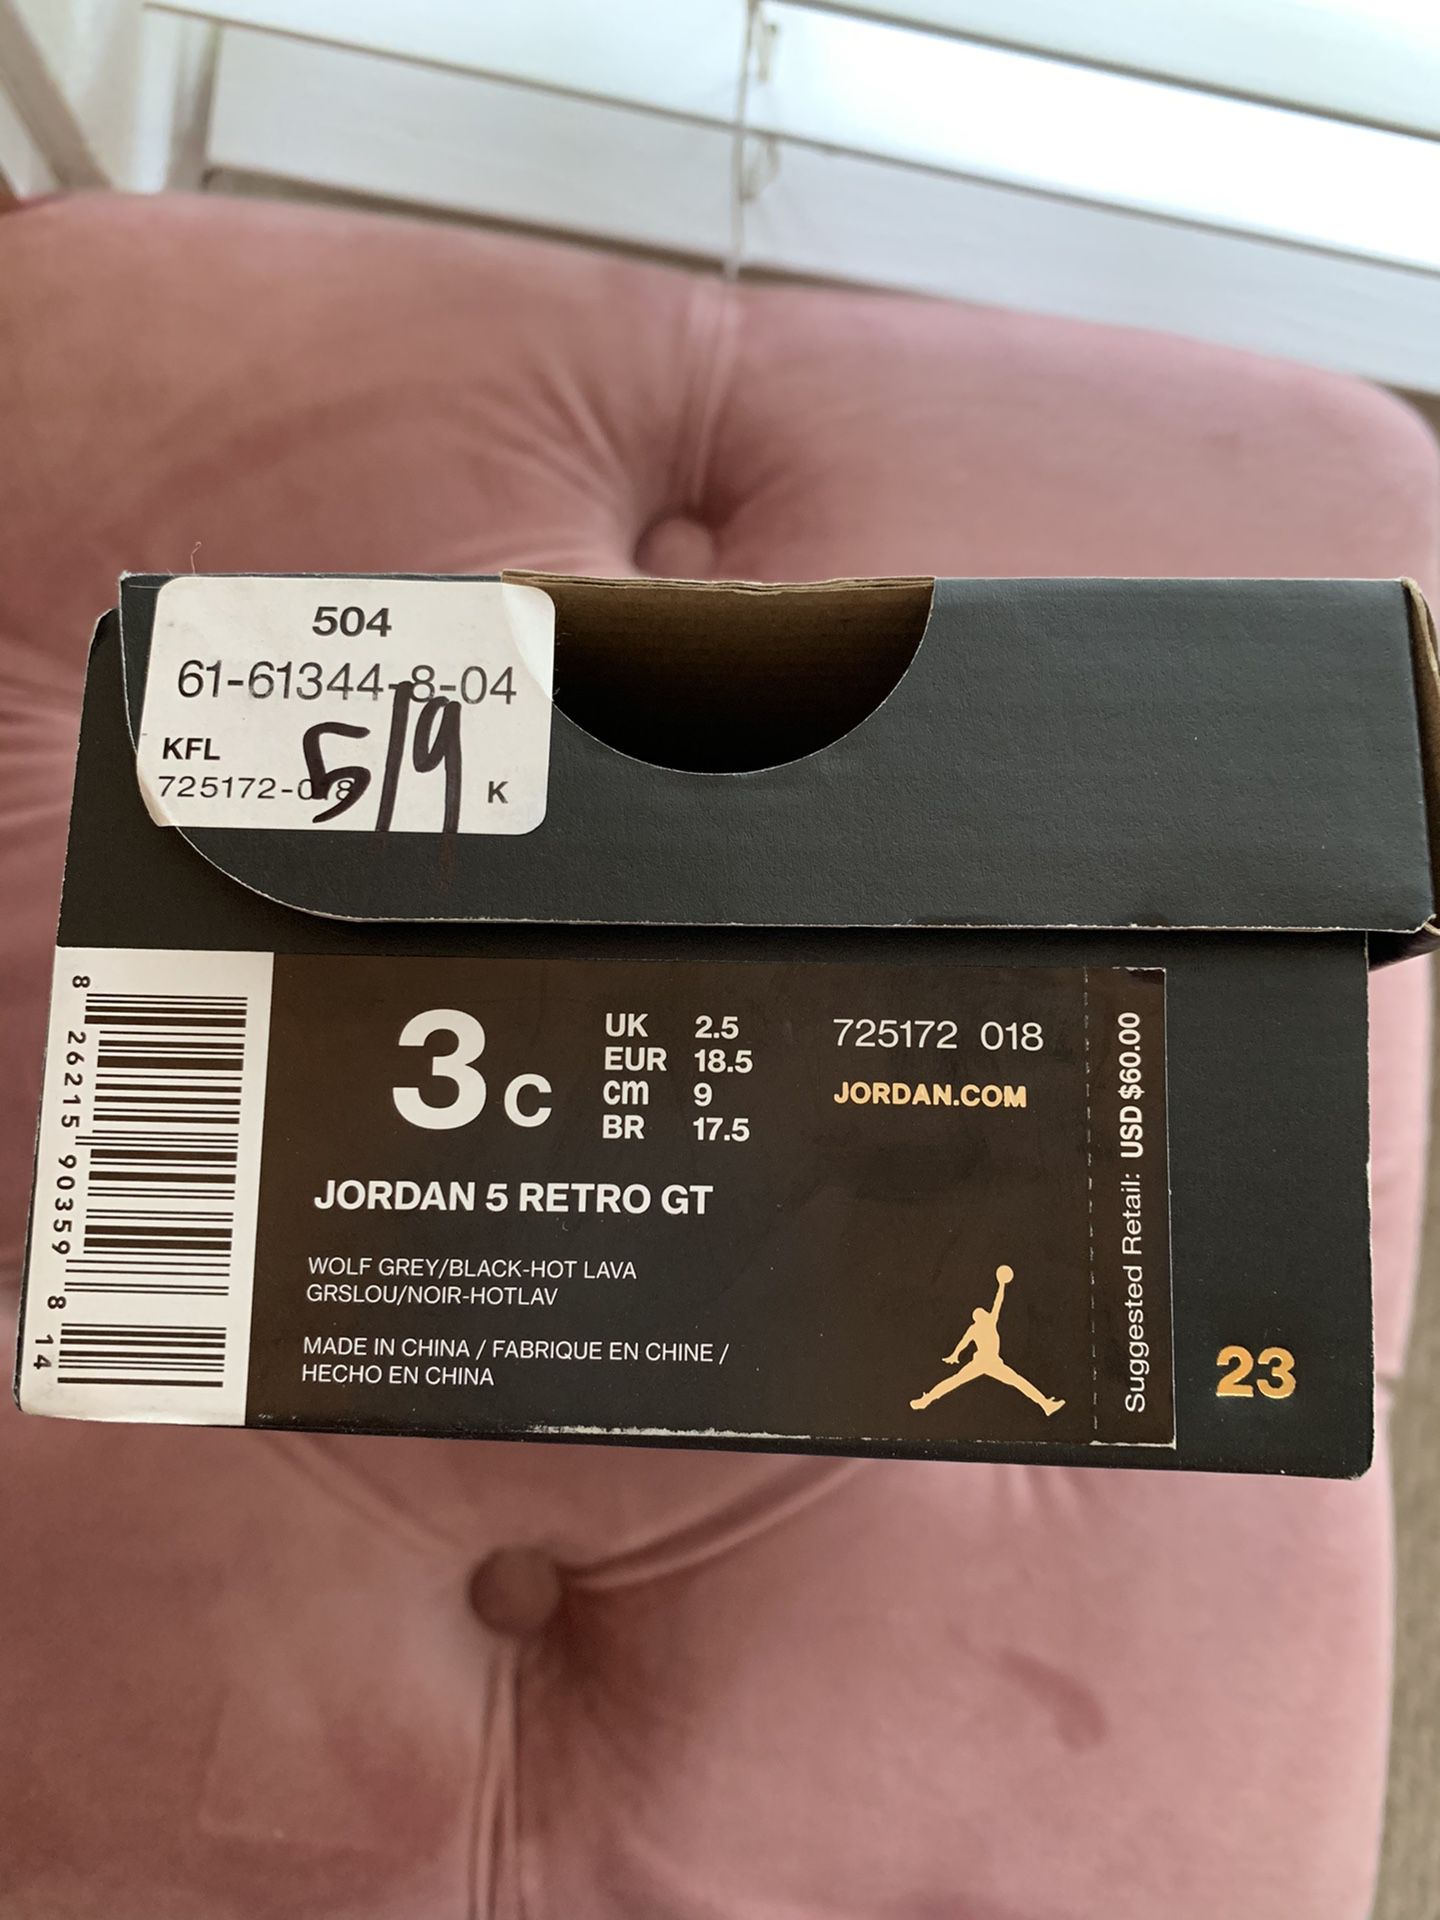 Jordan 5 Retro GT kids shoes for sale!